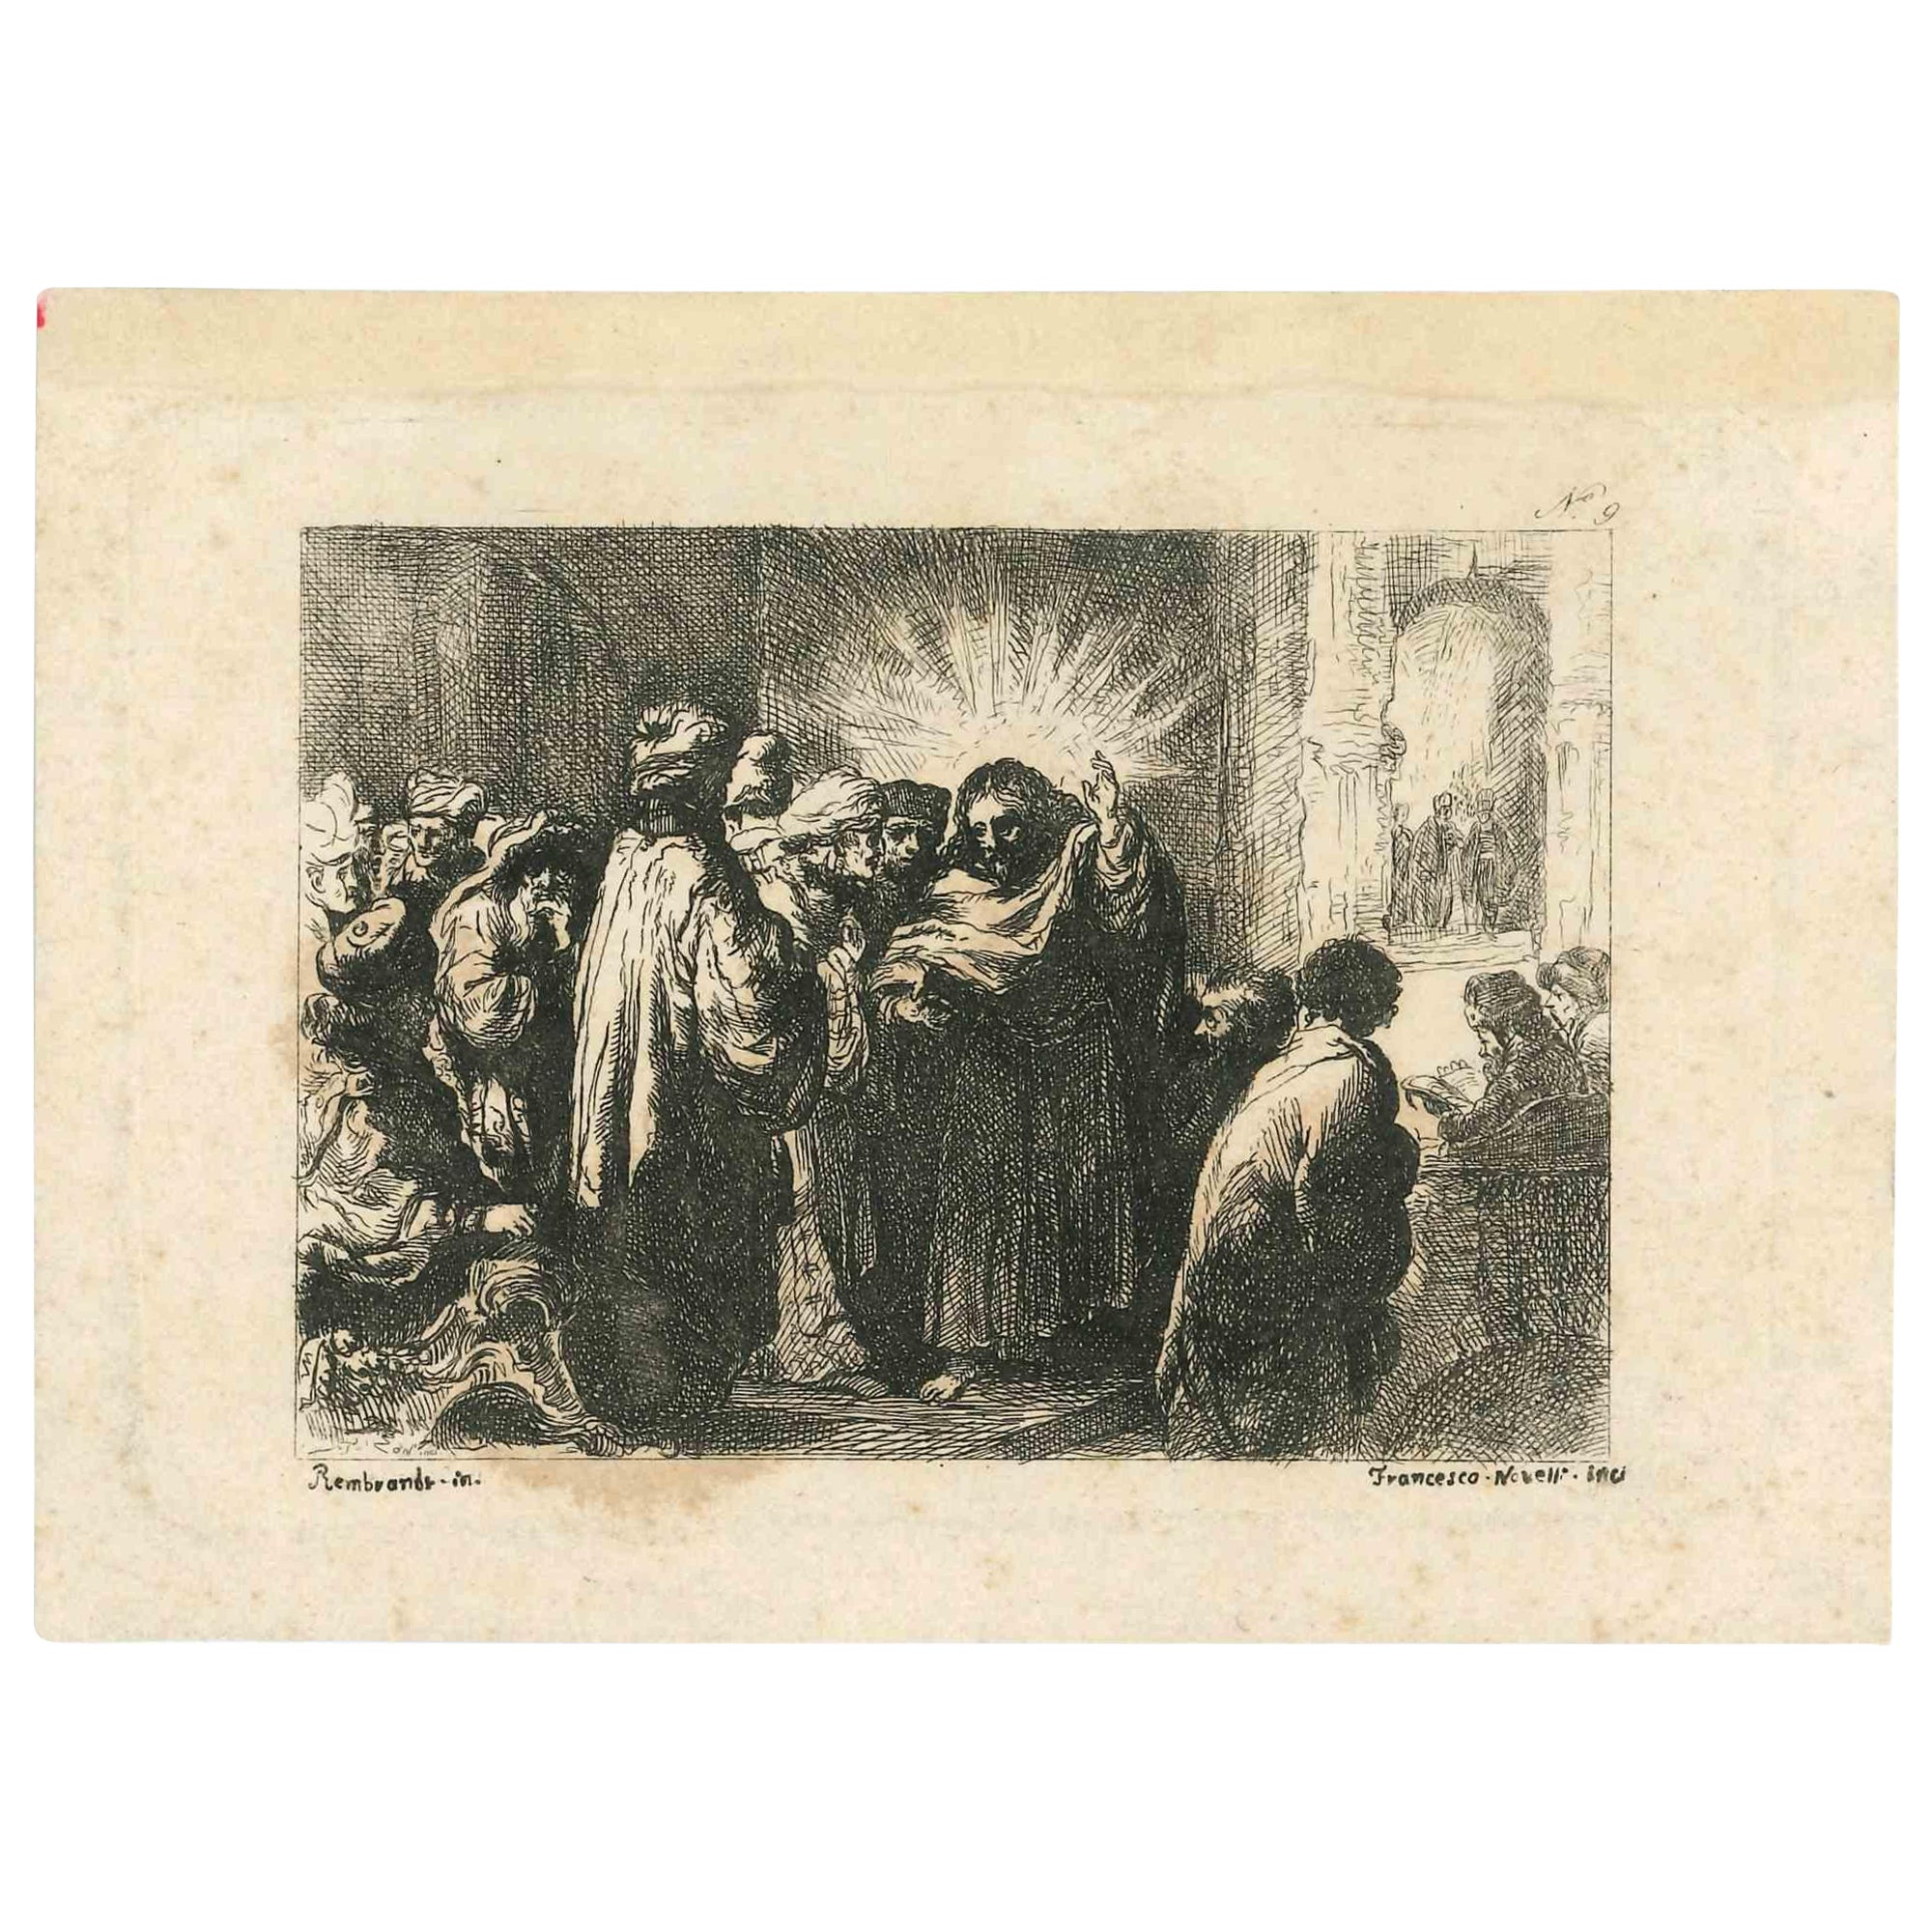 Pastoral Scene After Rembrandt ist eine Original-Radierung, die im frühen 18. Jahrhundert von Francesco Novelli (1767-1836) realisiert wurde.

Signiert auf der Platte.

In gutem Zustand. 

Das Kunstwerk wird durch sichere und kurze Striche mit gut